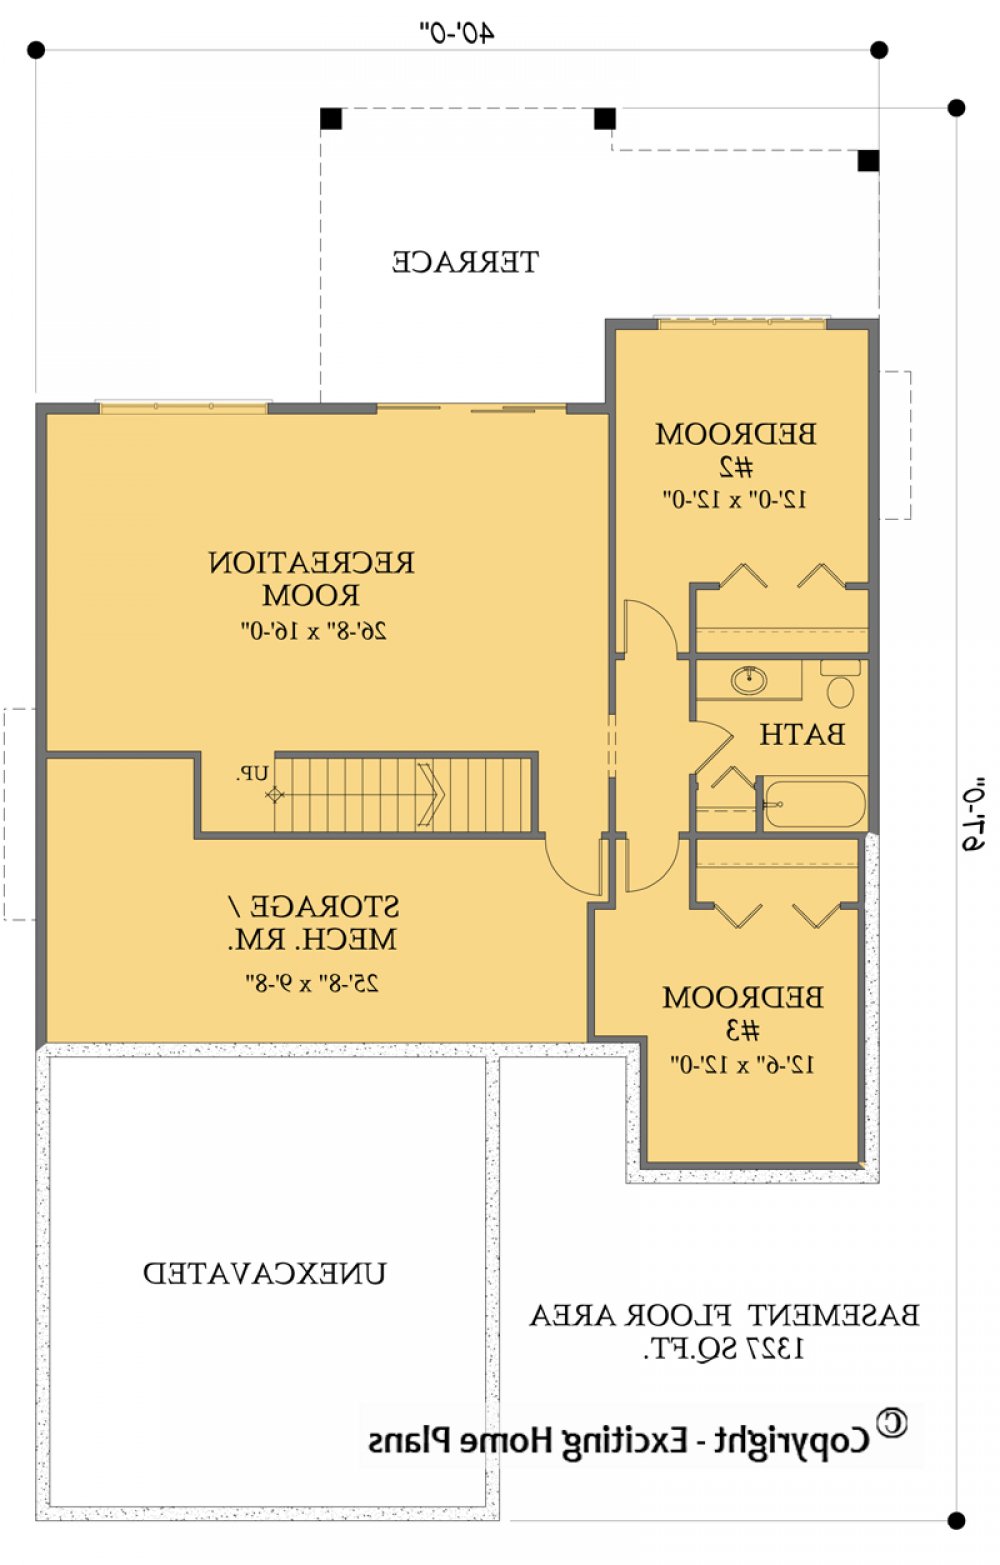 House Plan E1602-10 Lower Floor Plan REVERSE